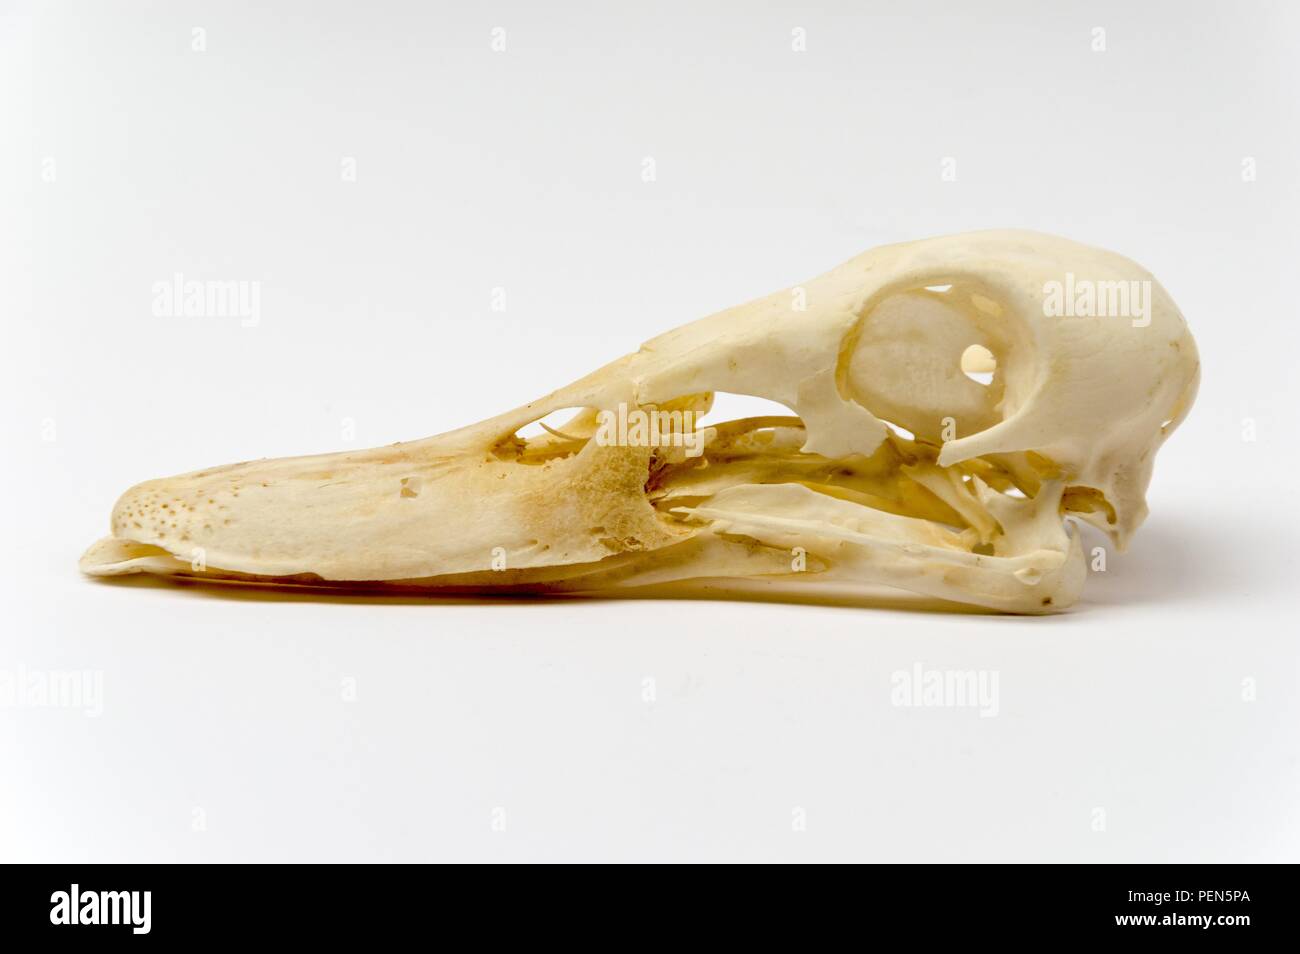 Schädel einer Ente (Stockente) - von der linken Seite Stock Photo